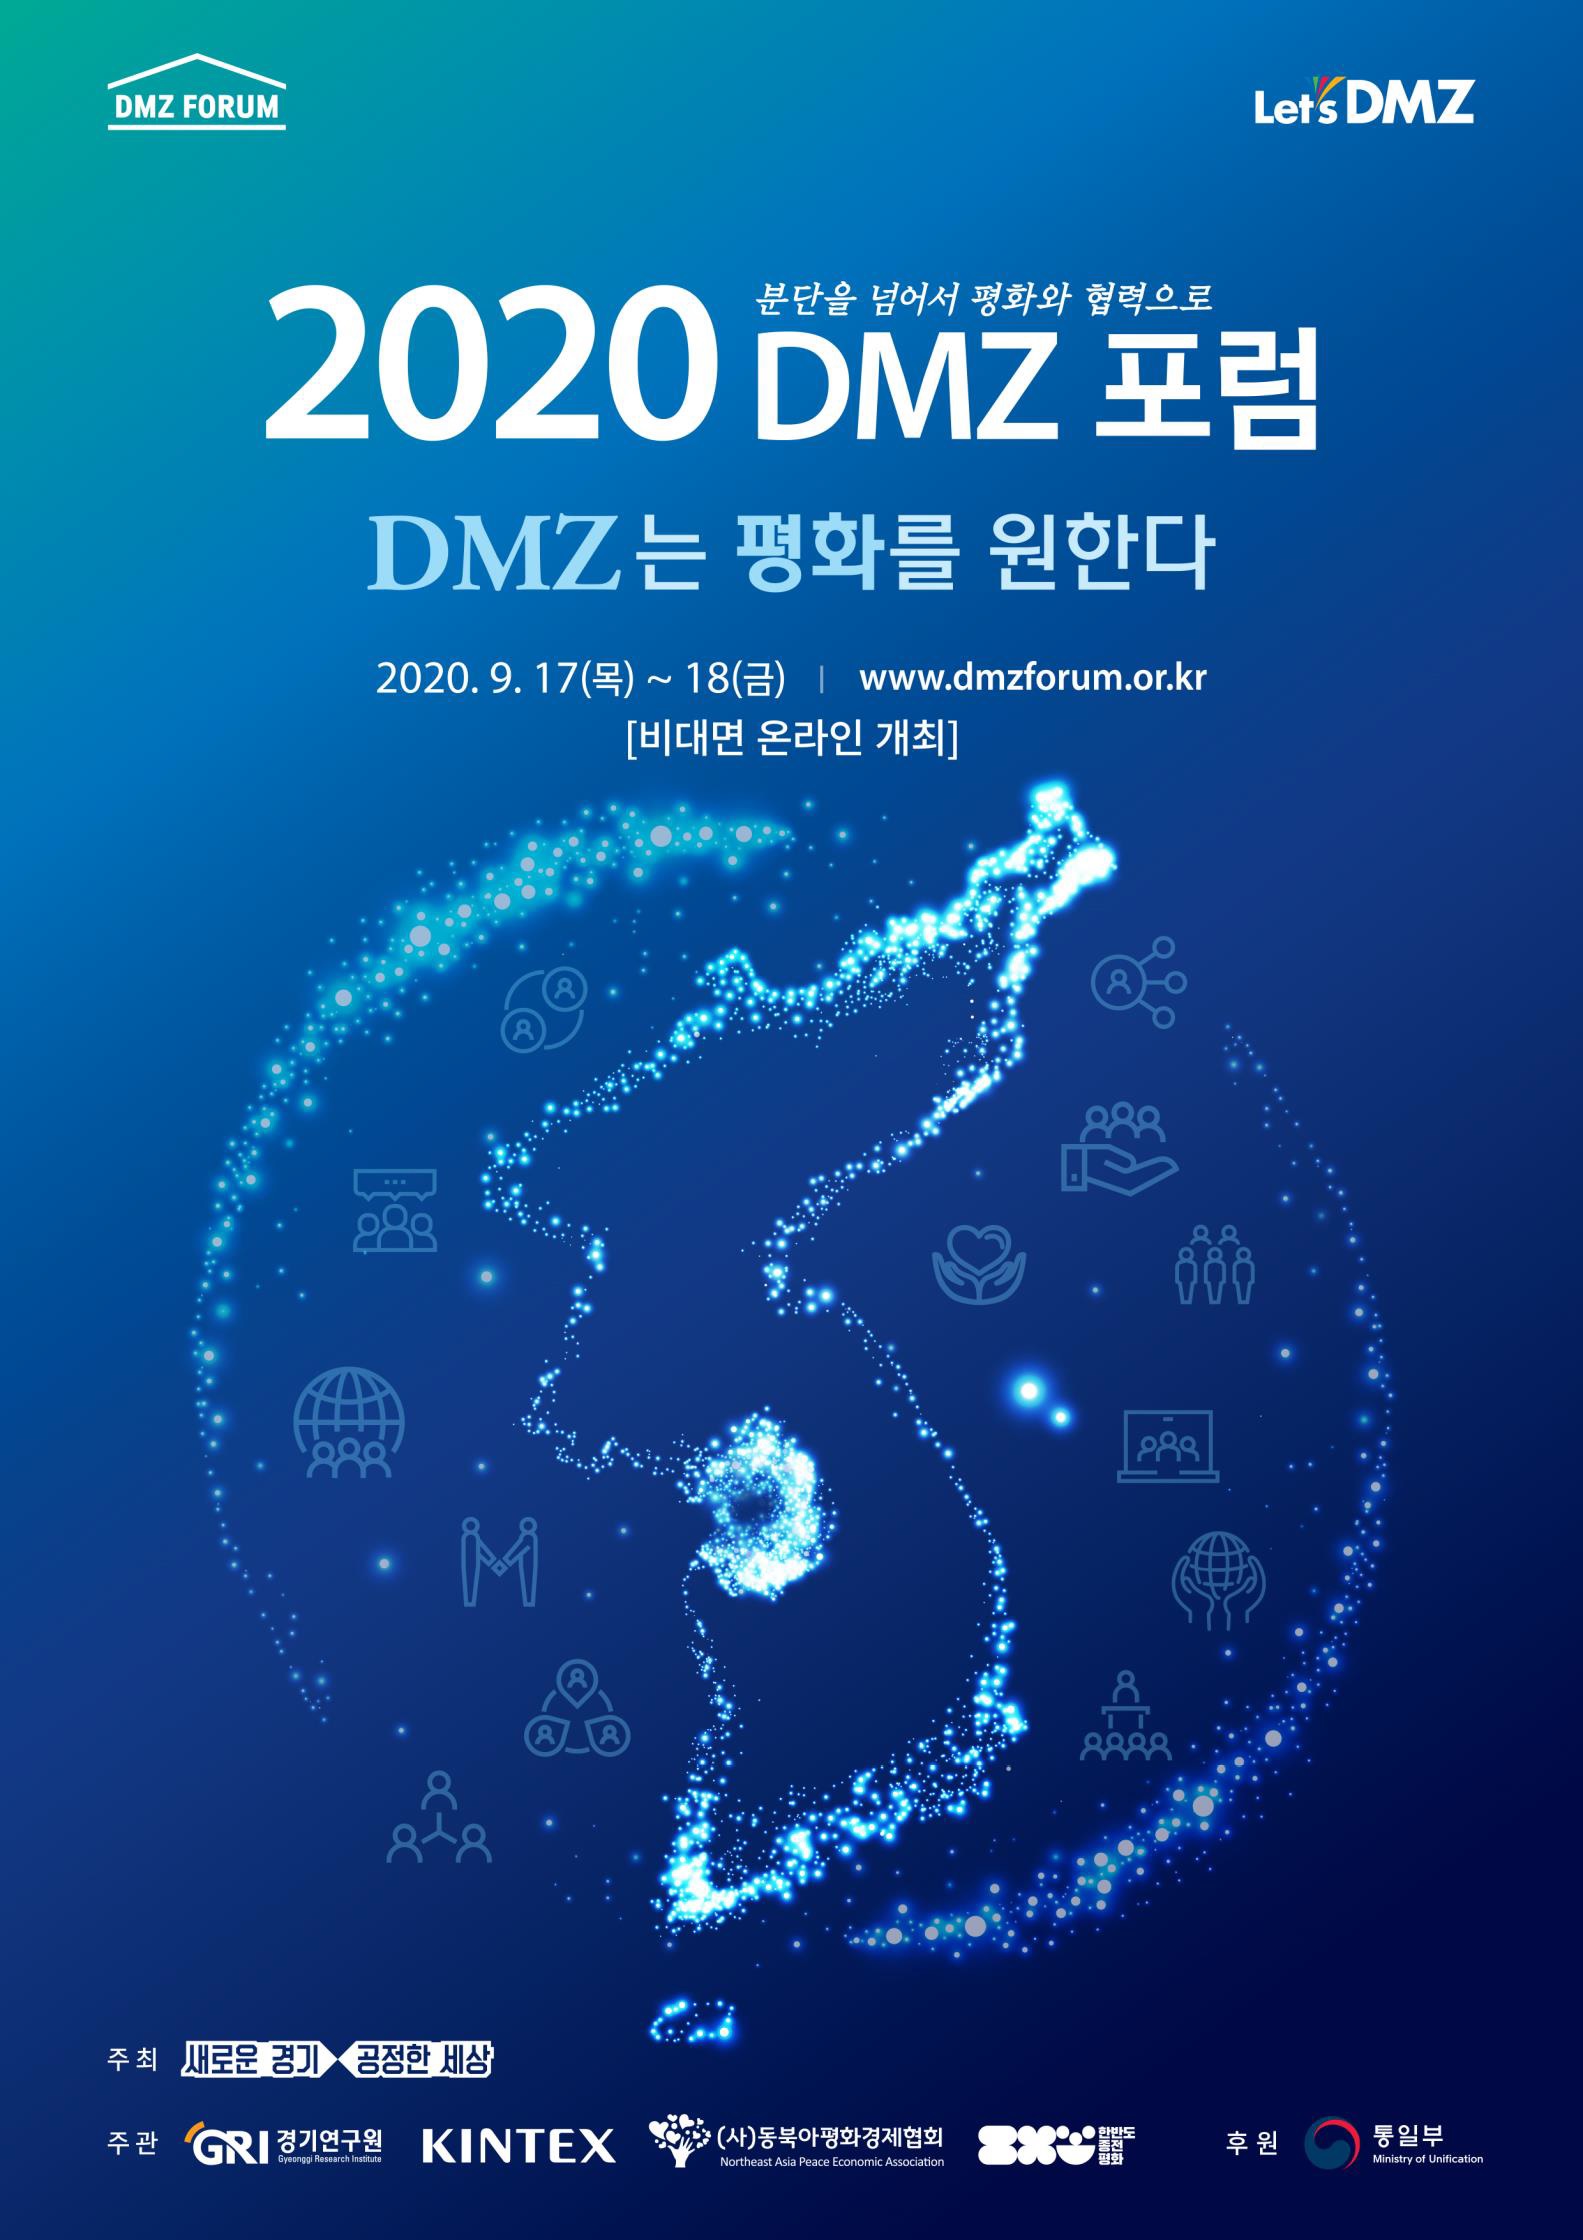 한반도 평화 분위기 확산 위한 ‘DMZ 포럼’, 온라인에서 더 다채롭게 만난다